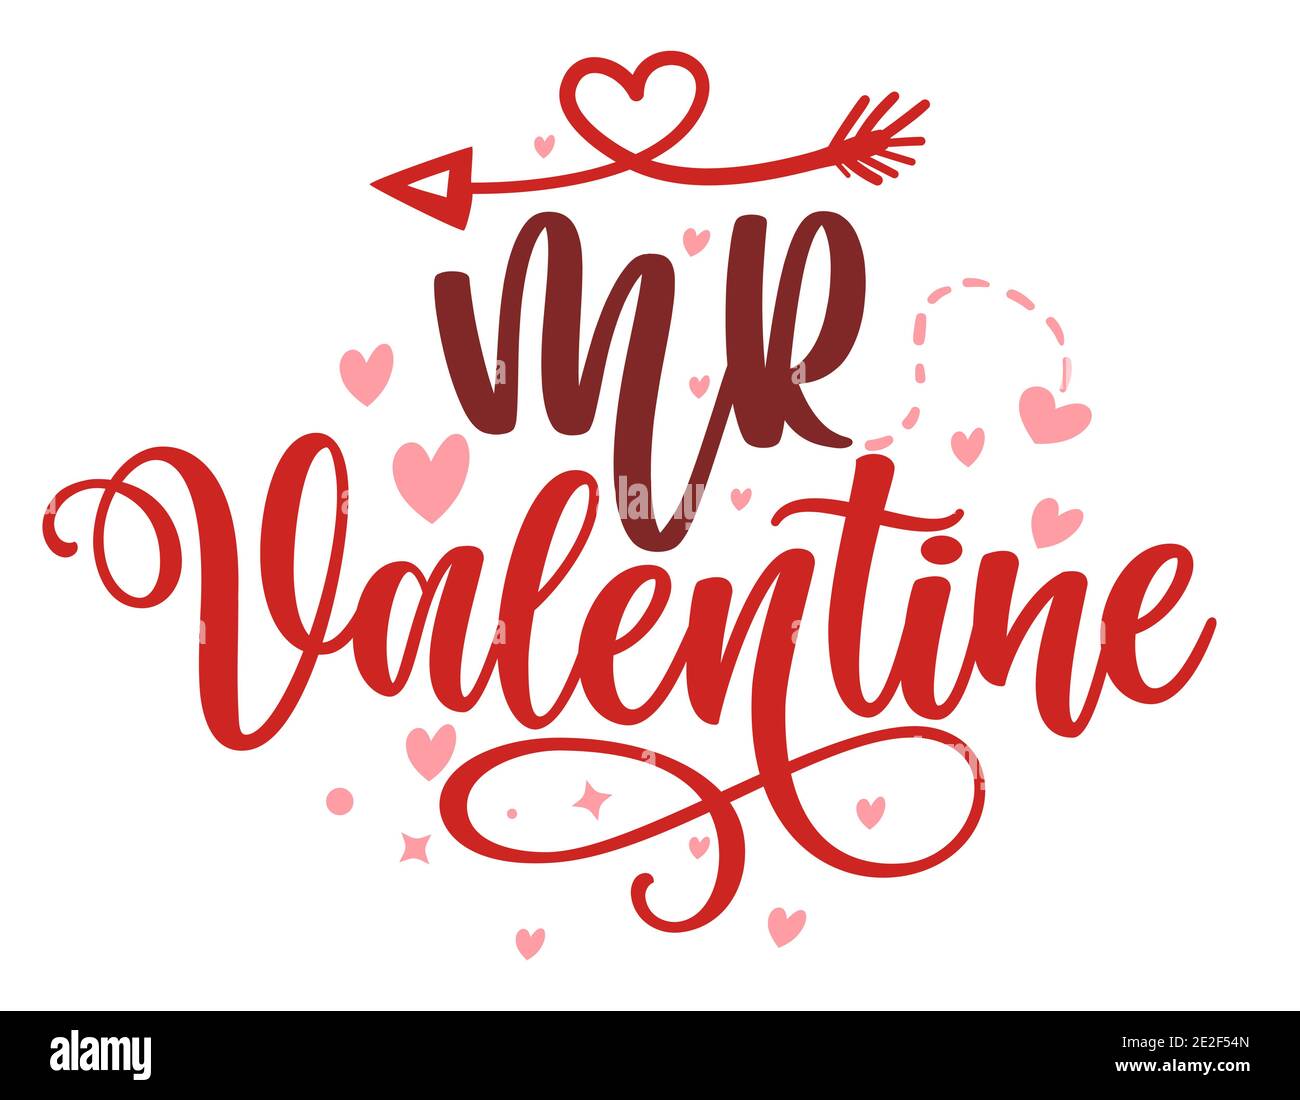 Mr Valentine - Kalligraphie für Valentinstag. Handgezeichnete Schriftzüge für schöne Grußkarten, Einladungen. Gut für romantische Kleidung, T-shi Stock Vektor